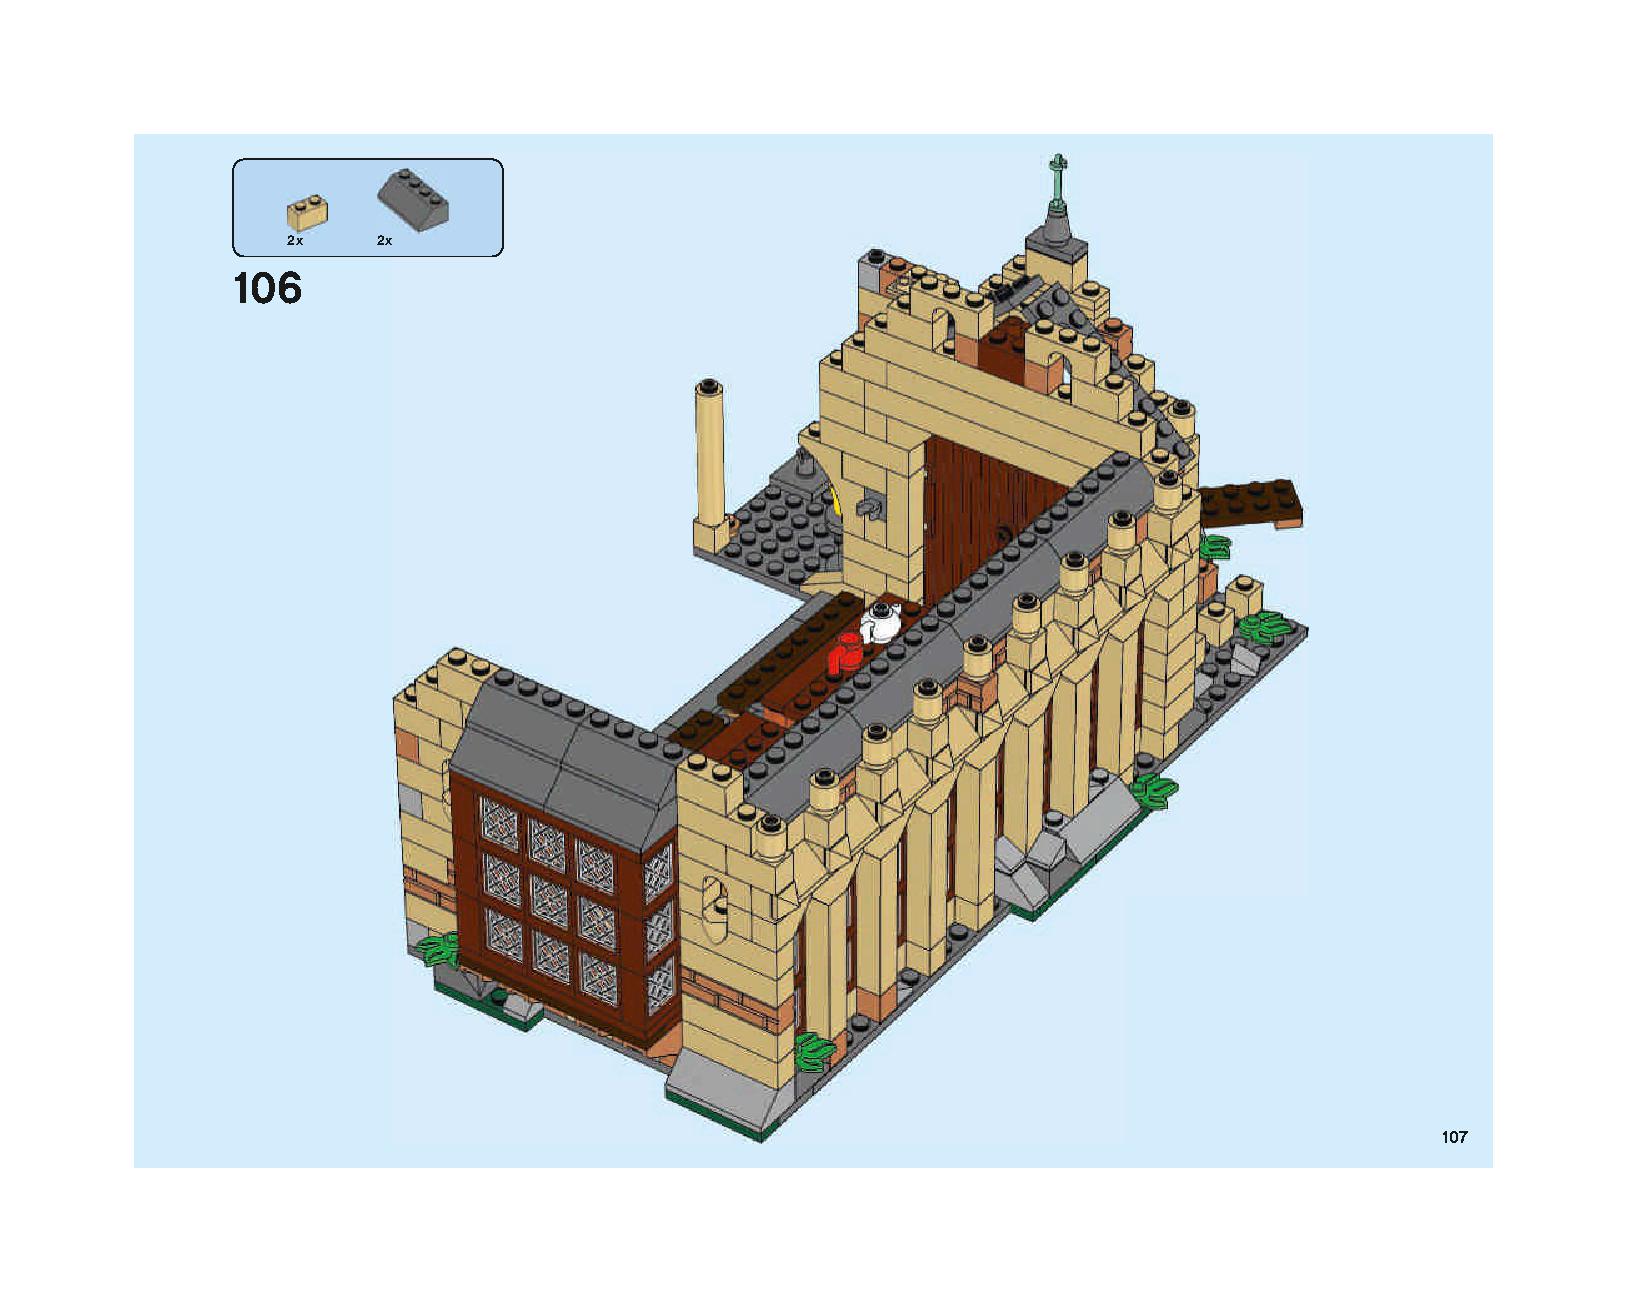 ホグワーツの大広間 75954 レゴの商品情報 レゴの説明書・組立方法 107 page